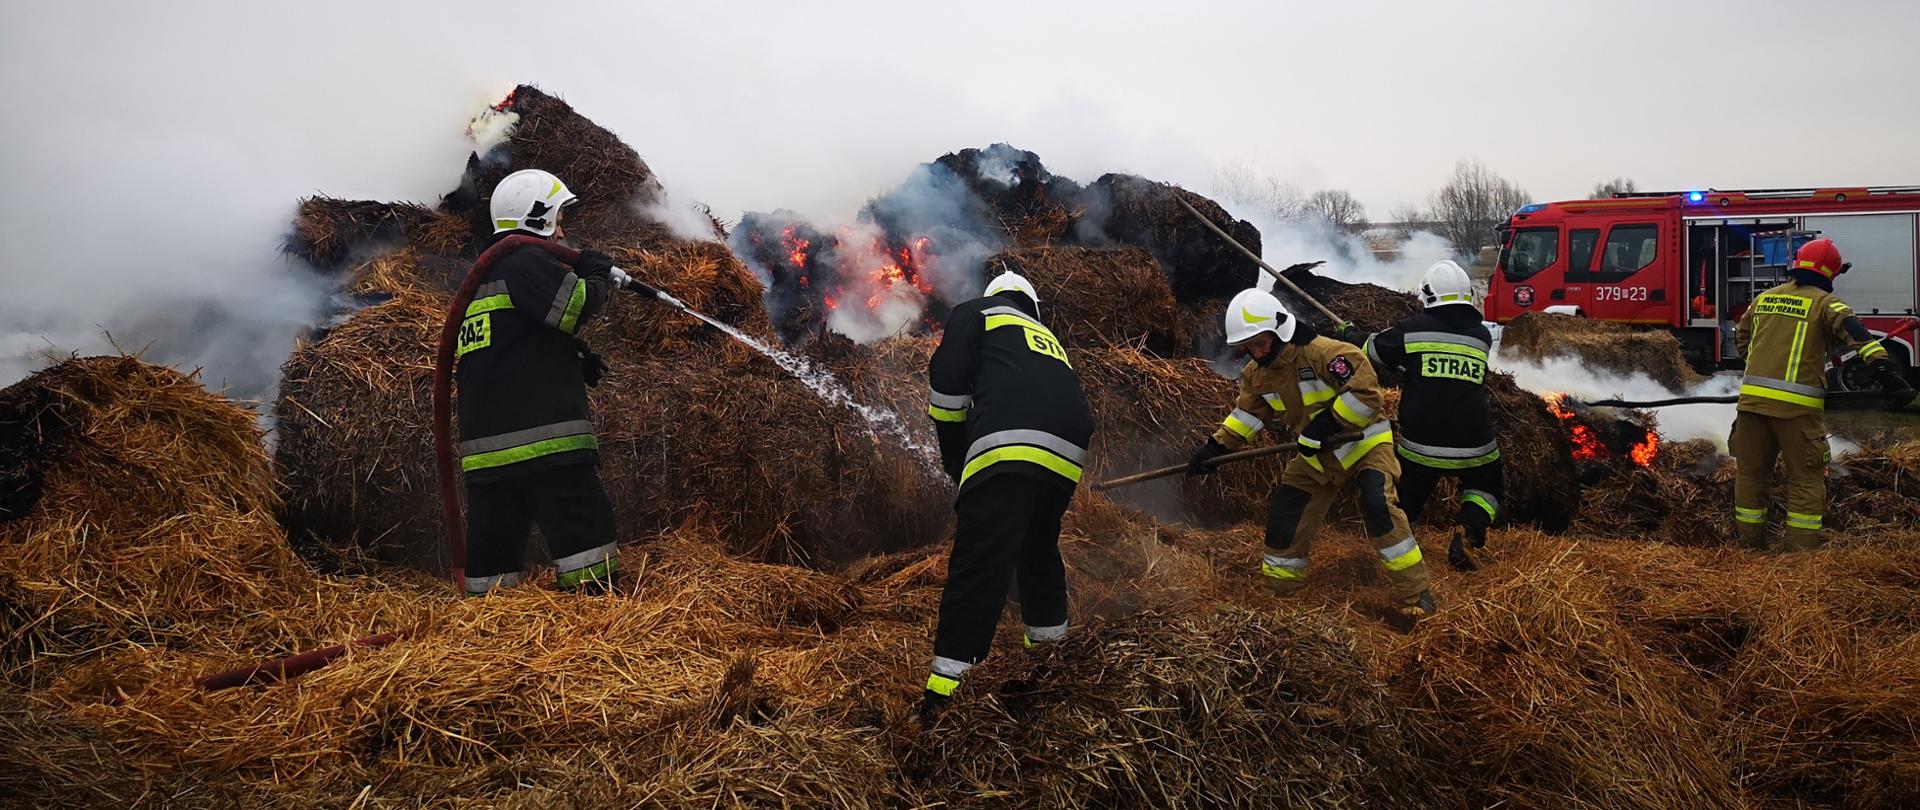 Zdjęcie przedstawia pożar słomy w balotach oraz strażaków którzy gaszą pożar przy użyciu wody oraz rozgarniają spaloną słomę. 